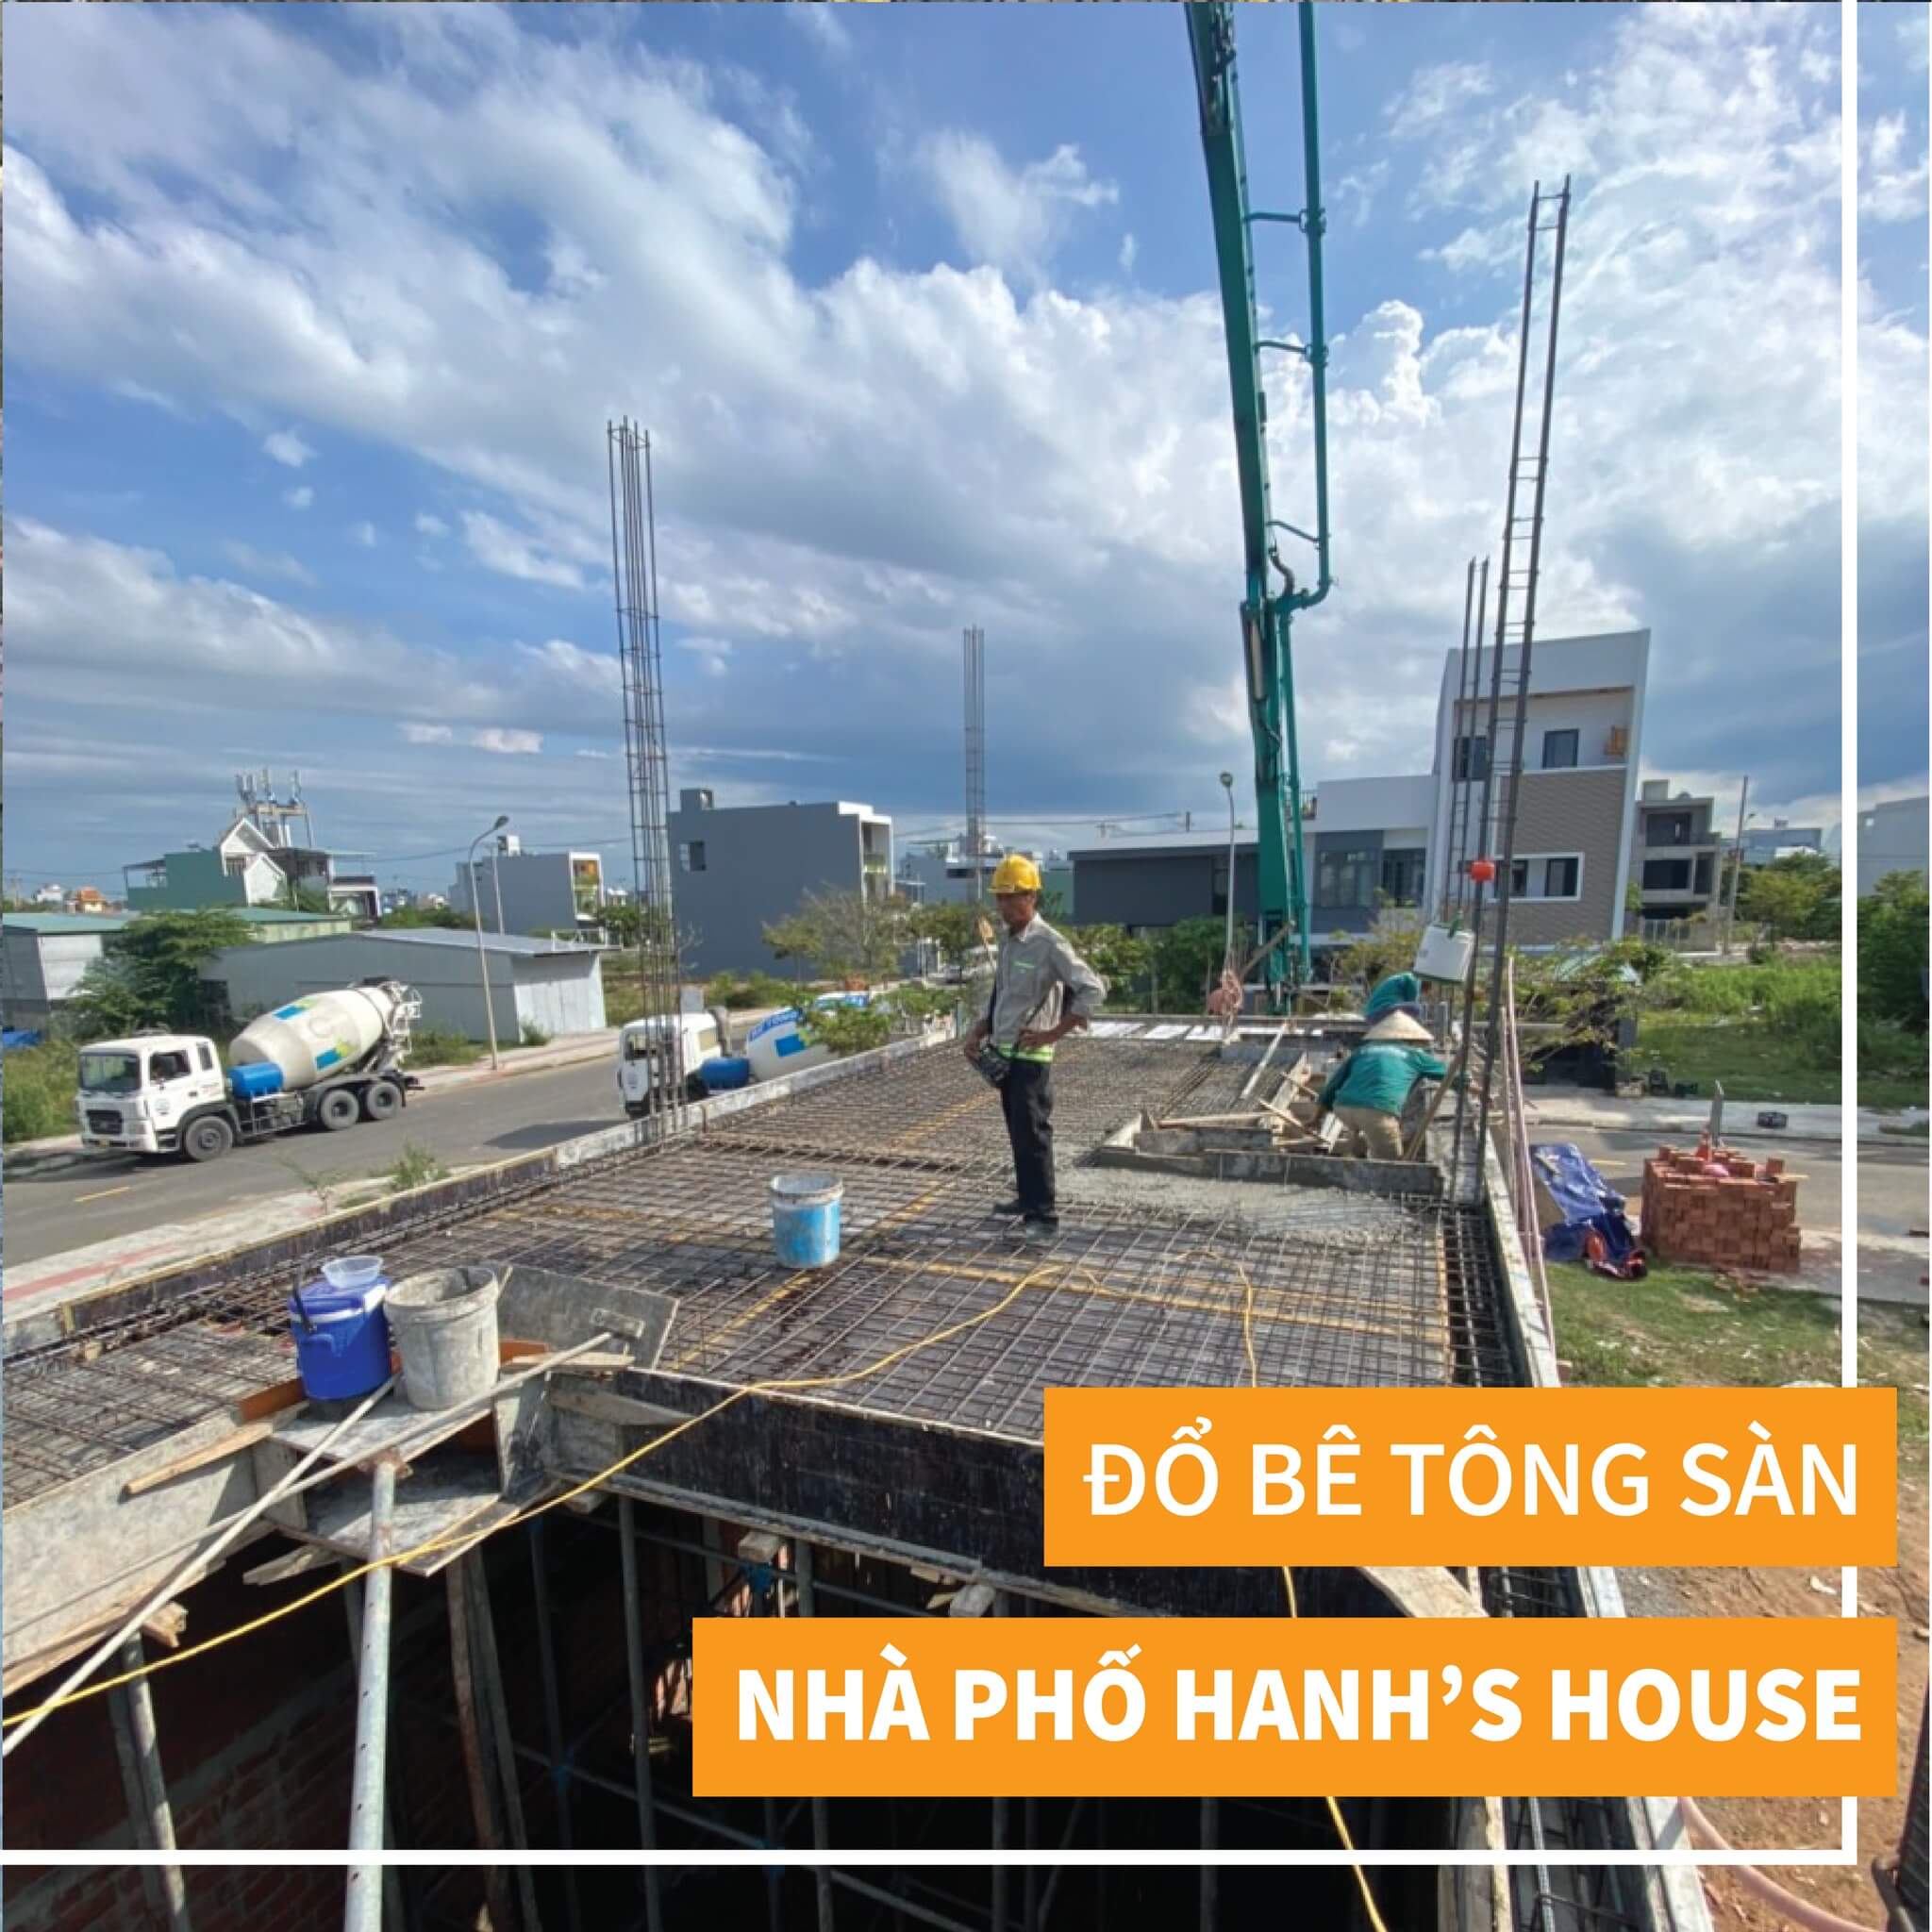 thi-cong-nha-pho-3-tang-hanh-house-2